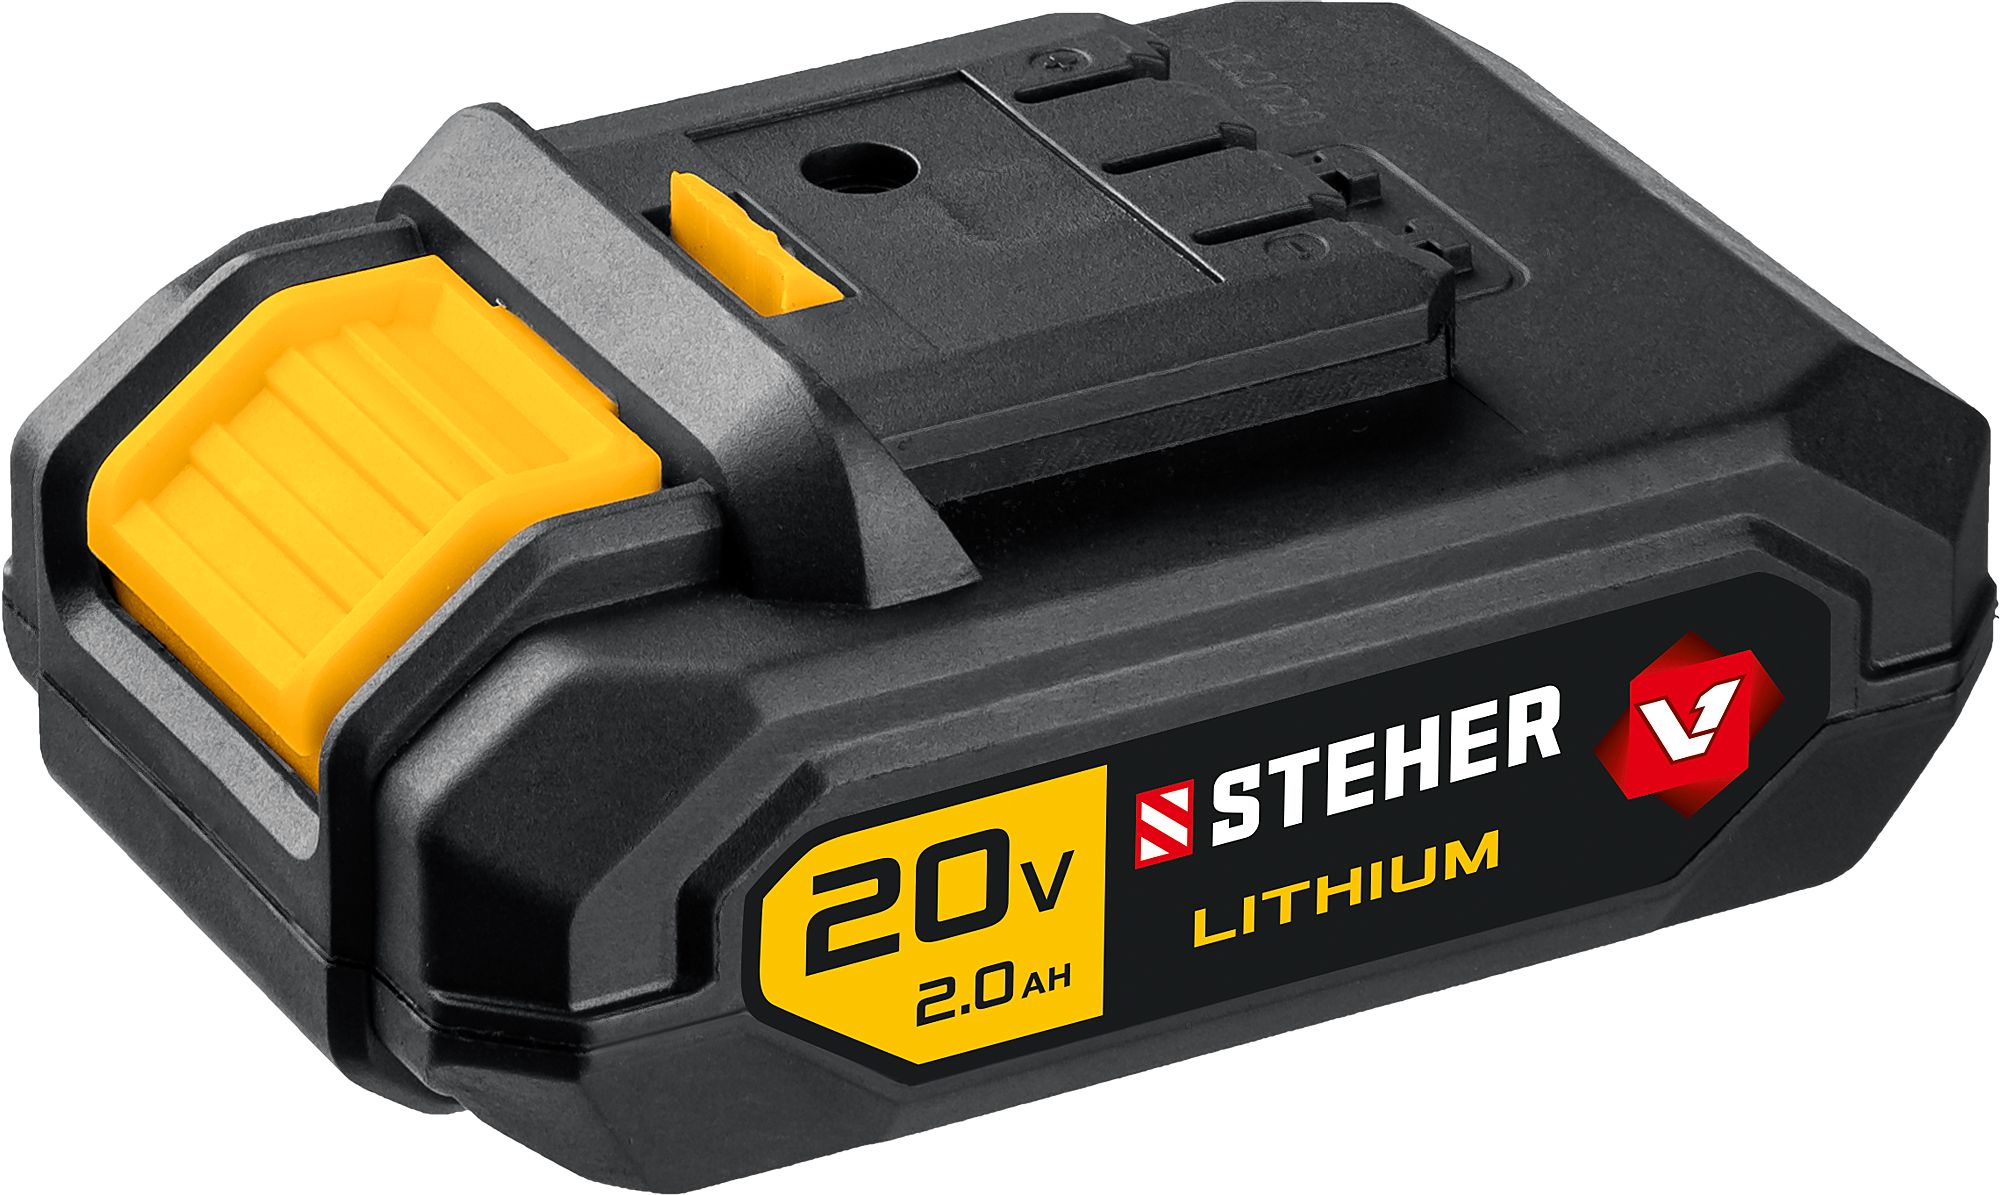 Аккумуляторная батарея (V1-20-2) STEHER V1, 20 В, 2.0 А·ч 5 шт драйвер шагового двигателя tmc2209 v1 2 tmc2208 uart 2 8a запчасти для 3d принтера tmc2130 tmc5160 для skr v1 3 v1 4 mini e3